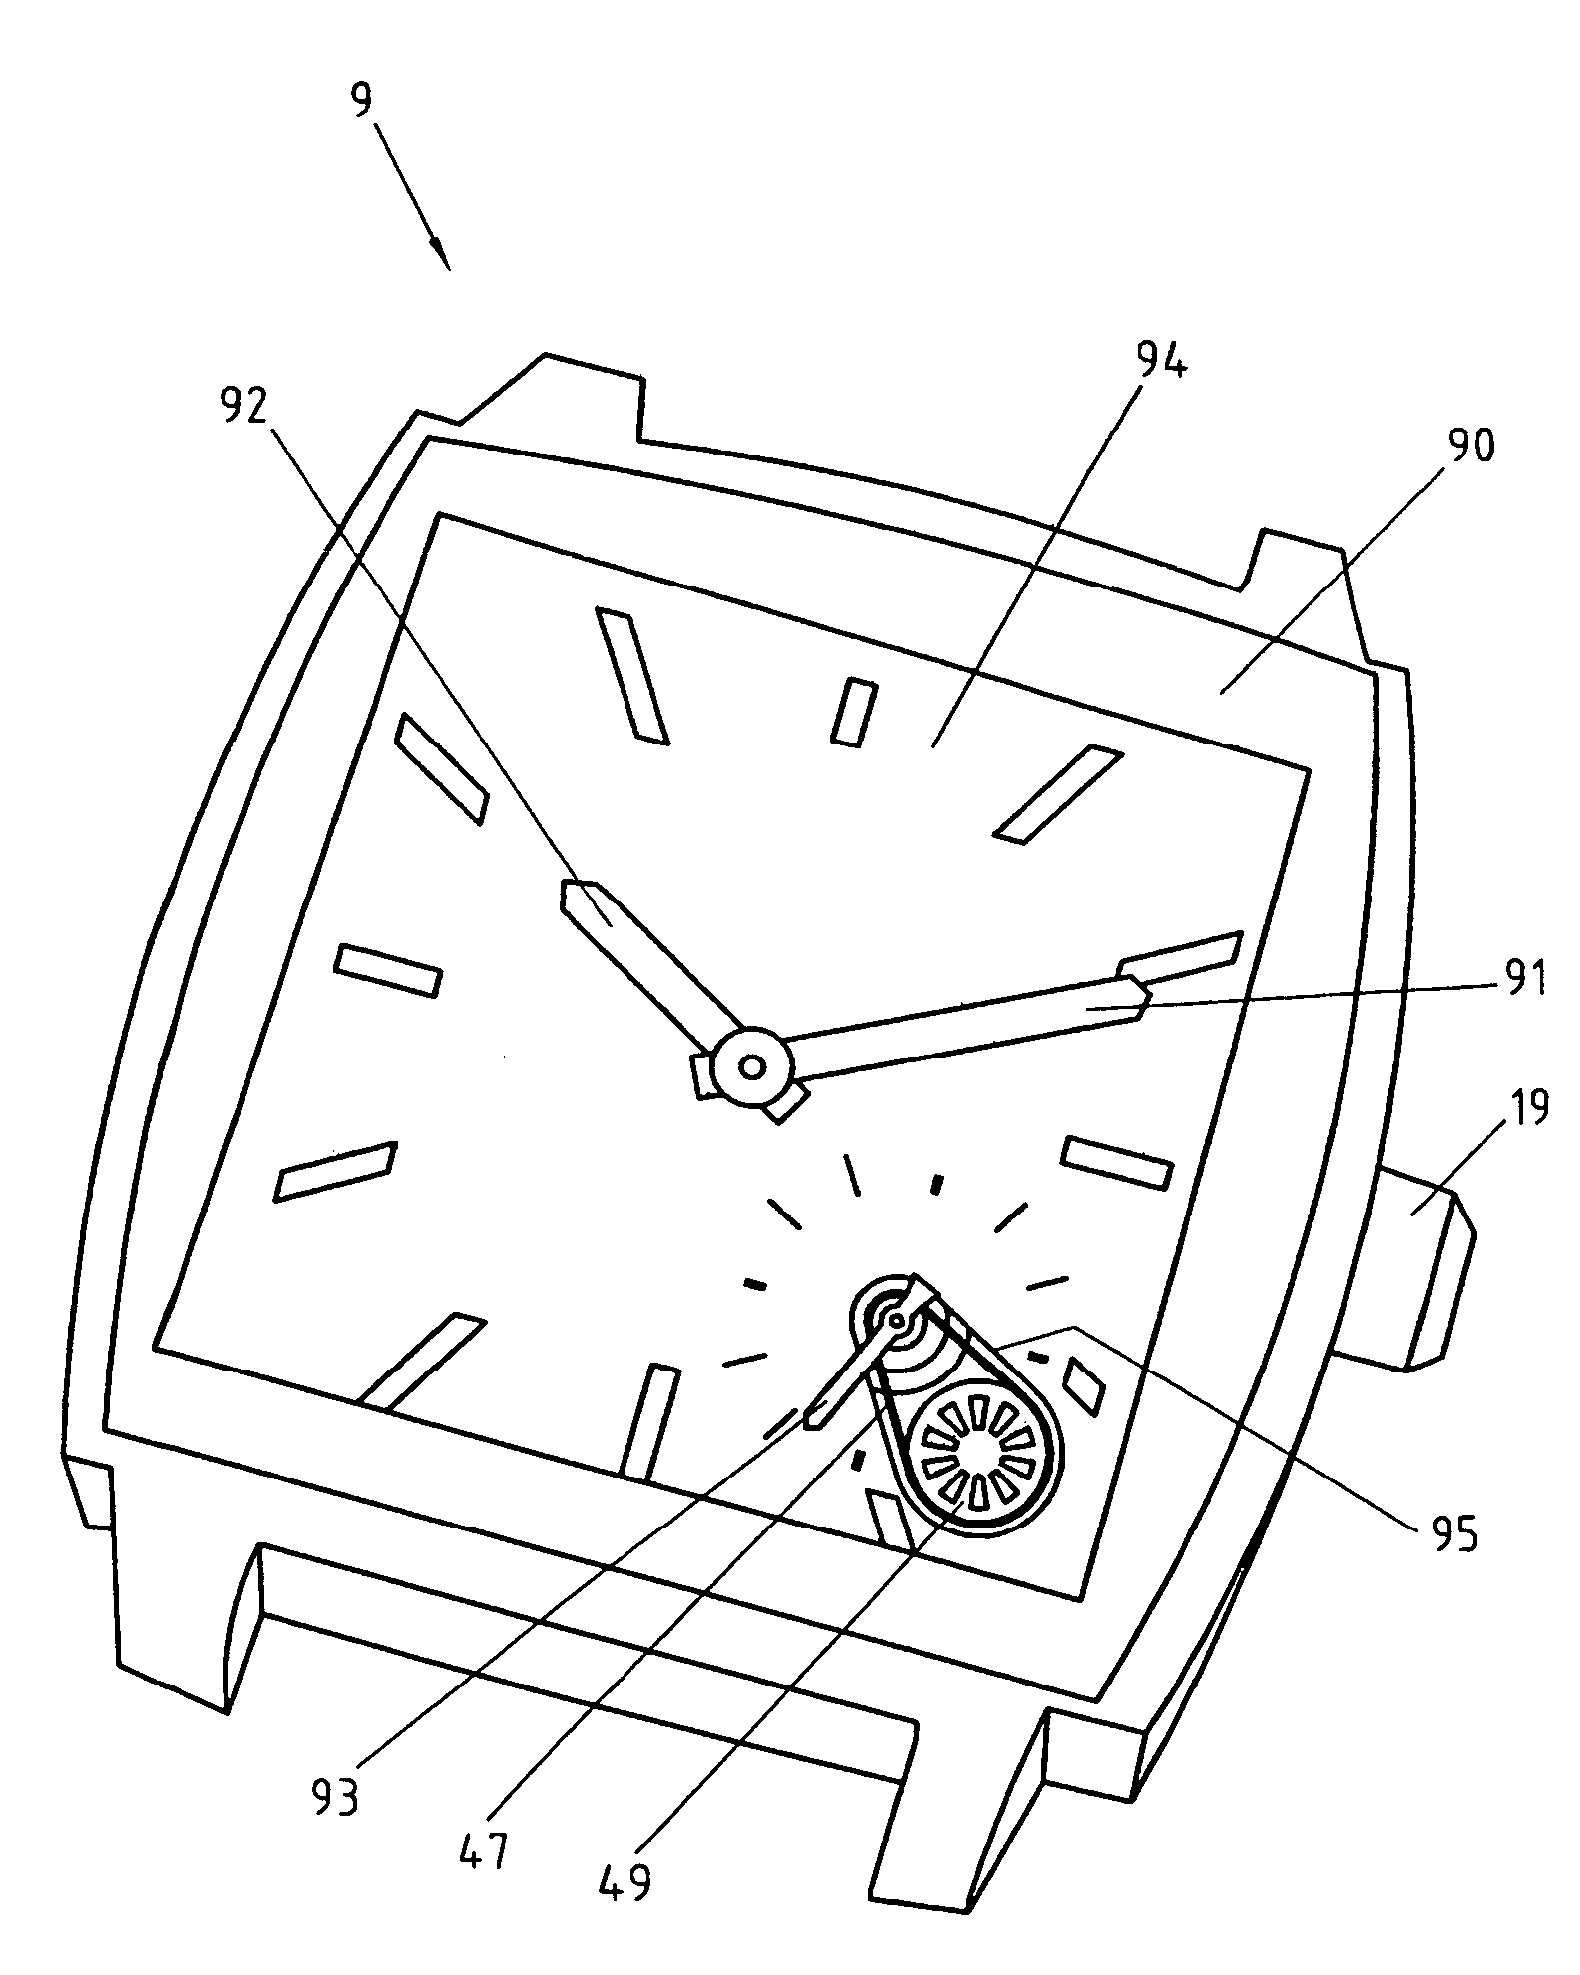 Clockwork movement for a wristwatch